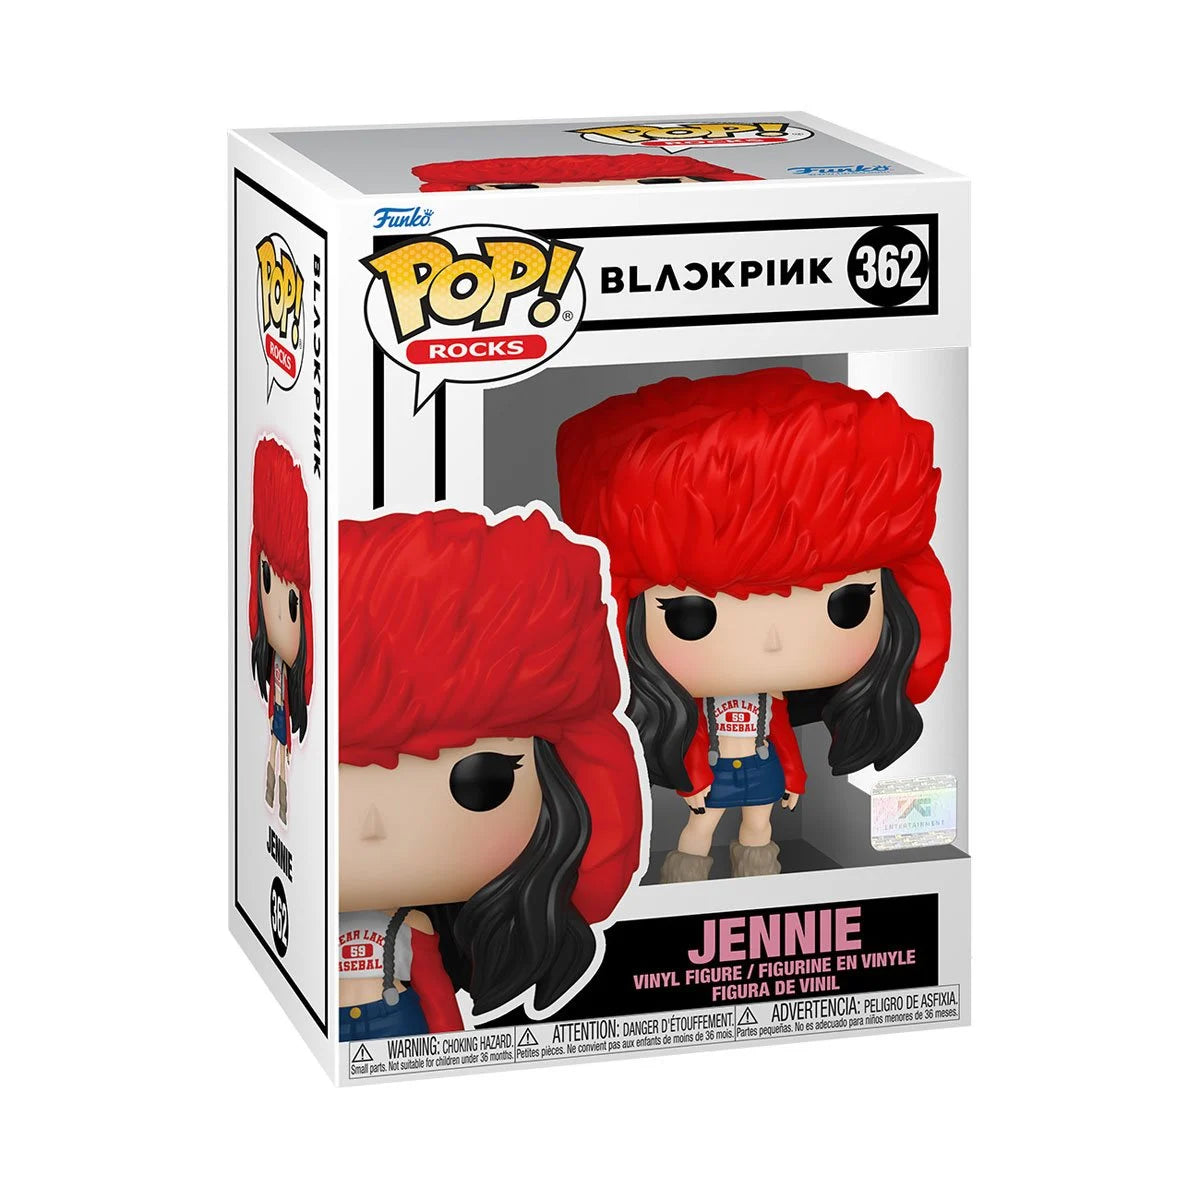 Funko Pop Rocks: Blackpink - Jennie